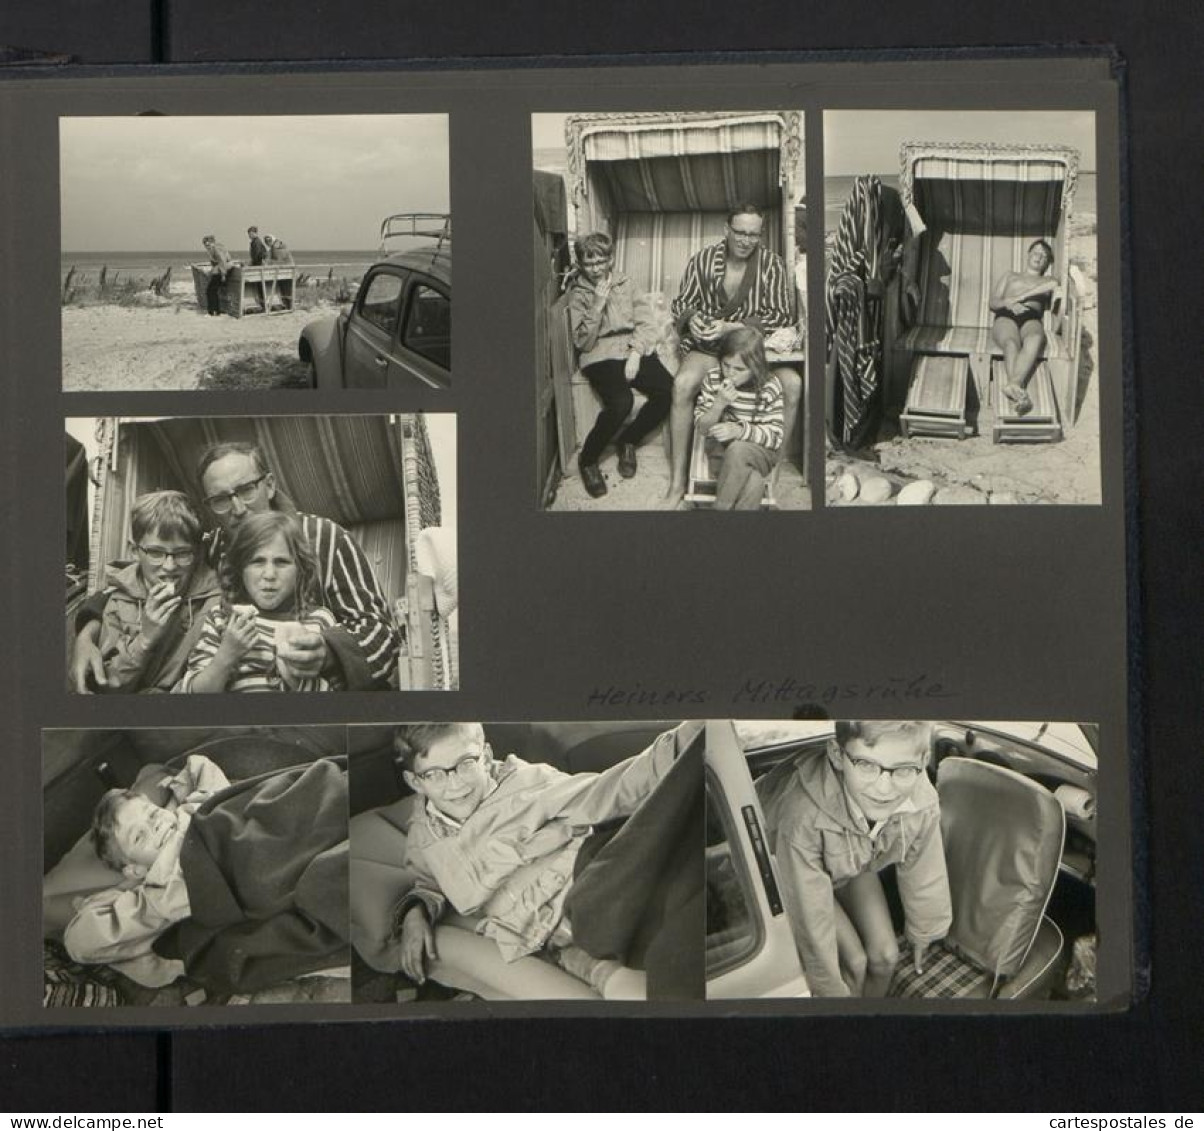 Fotoalbum mit 199 Fotografien, Ansicht Fehmarn, Familie Hess auf Reise mit VW Käfer nach der Ostsee, 1959 